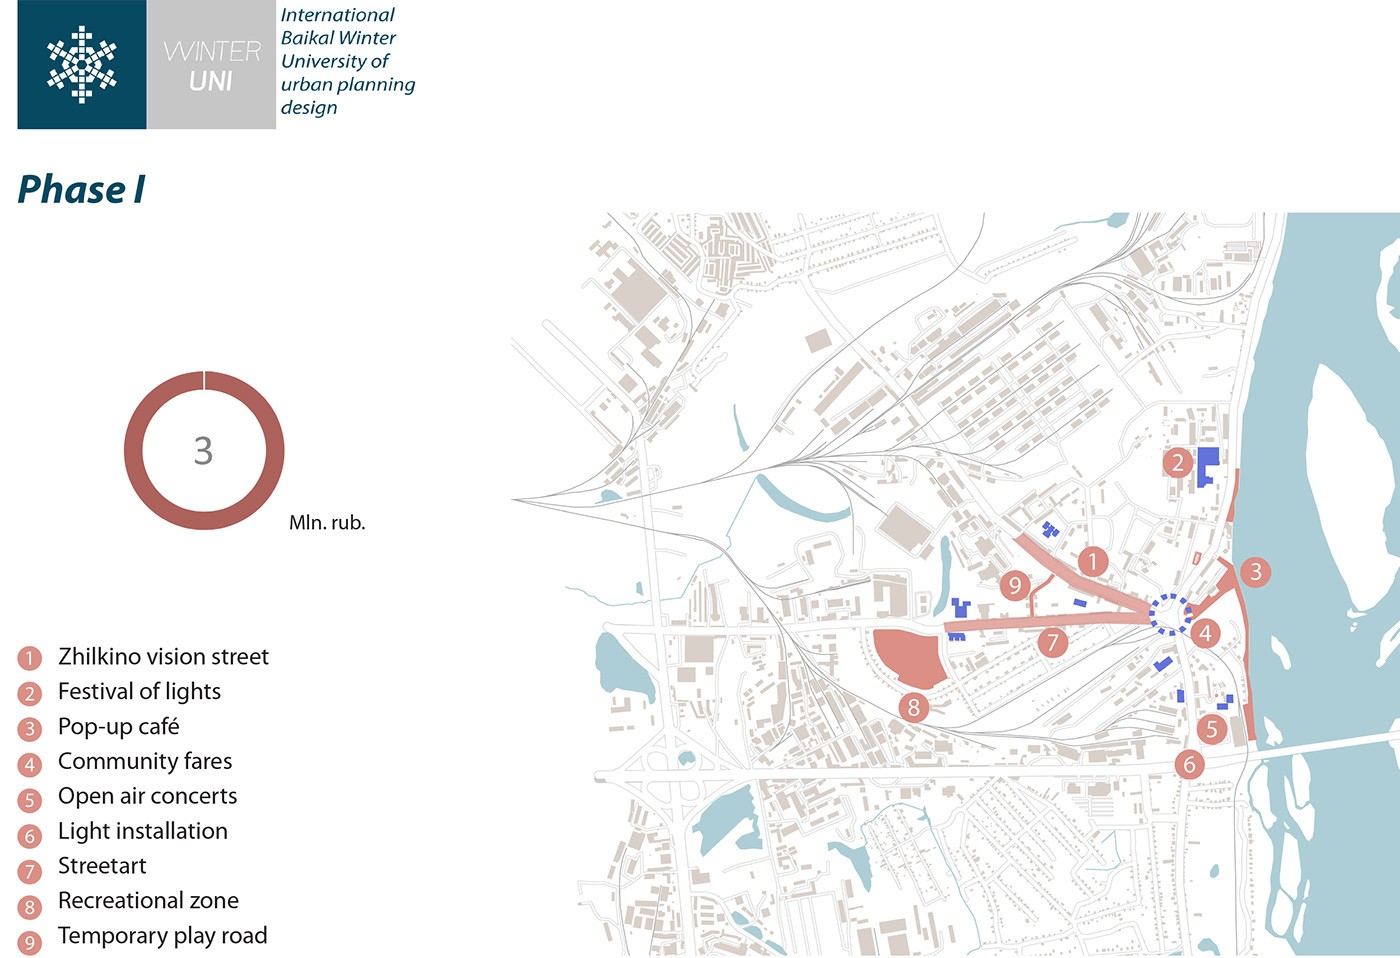 توسعه مجدد مناطق ناراحت کننده (ژیلکینو) |  آزمایشگاه طراحی شهری 25